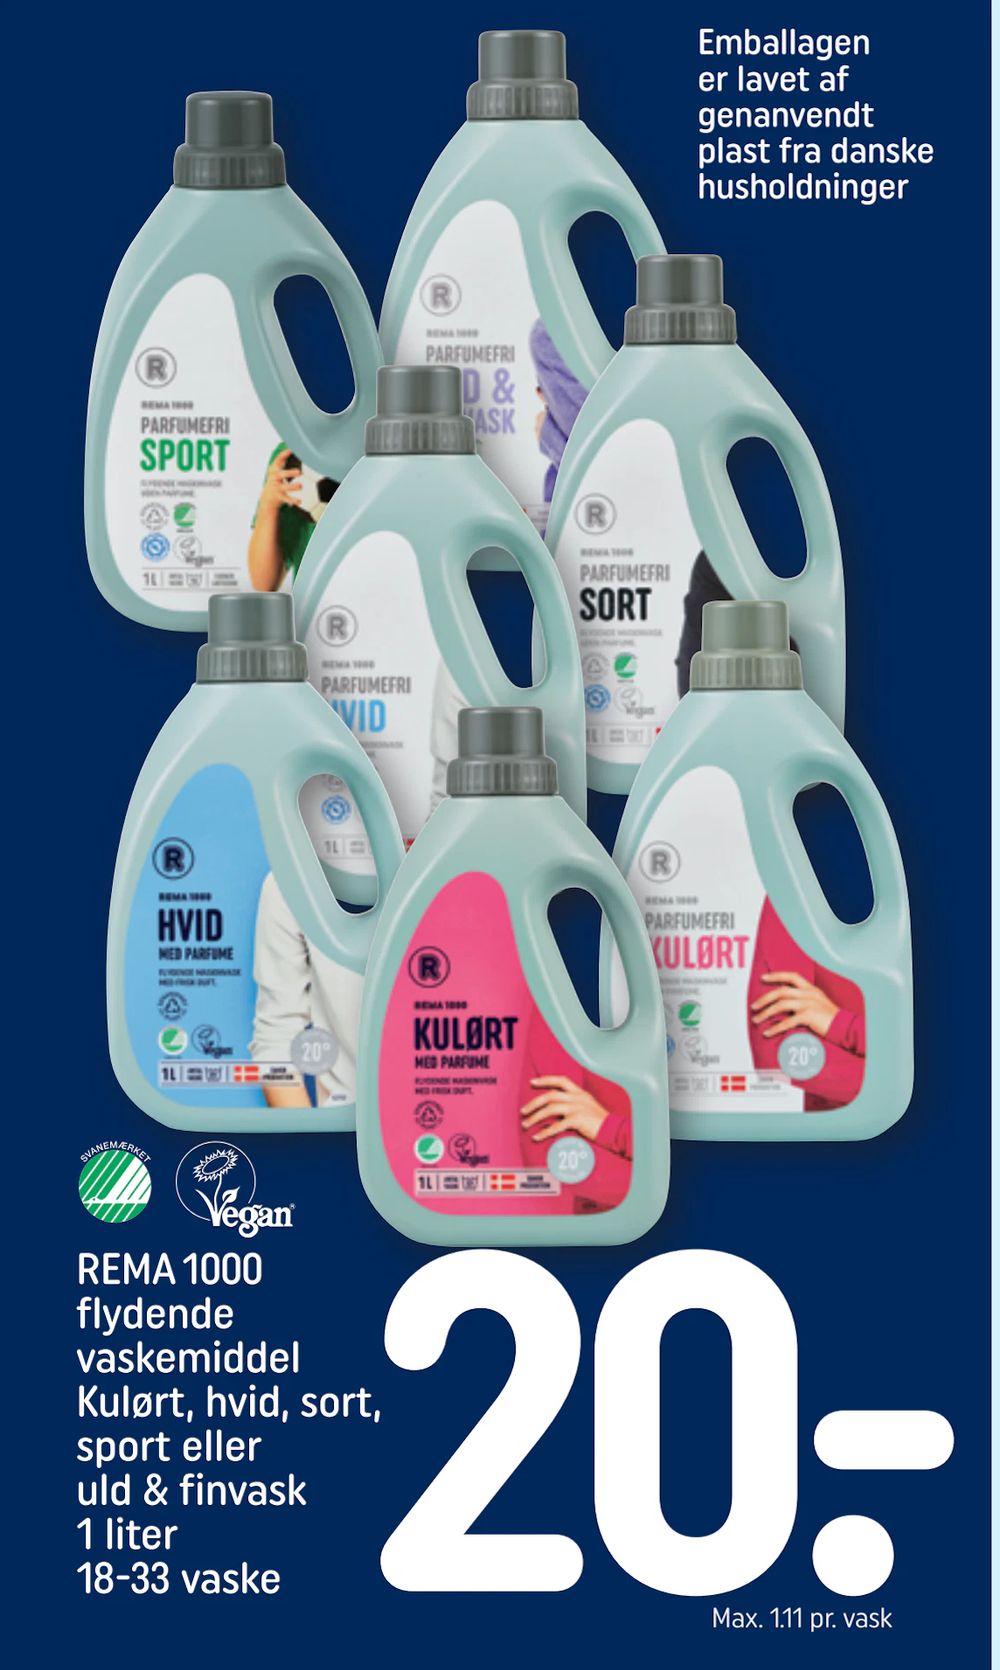 Tilbud på REMA 1000 flydende vaskemiddel Kulørt, hvid, sort, sport eller uld & finvask 1 liter 18-33 vaske fra REMA 1000 til 20 kr.